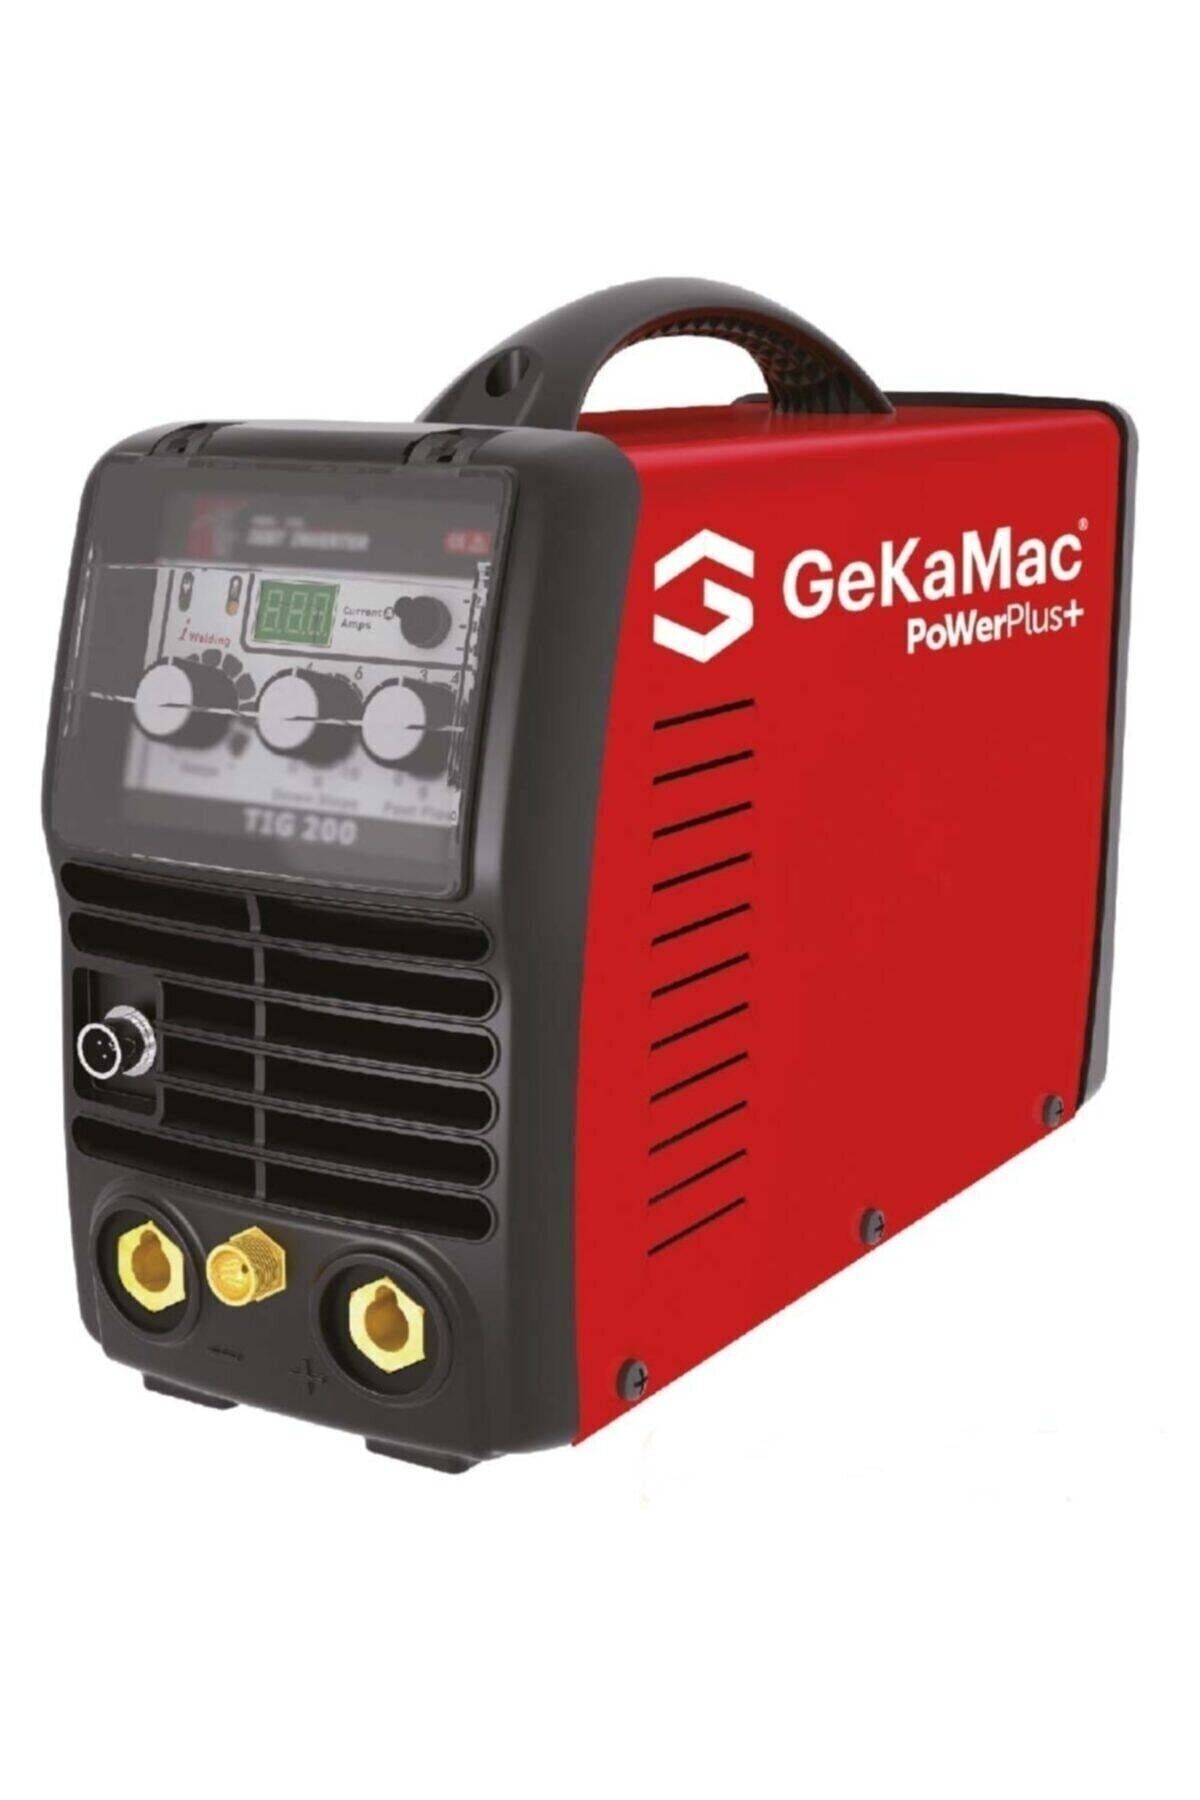 GeKaMac Power Plus Tıg 200 Dc Pfc Argon Kaynak Makinesi